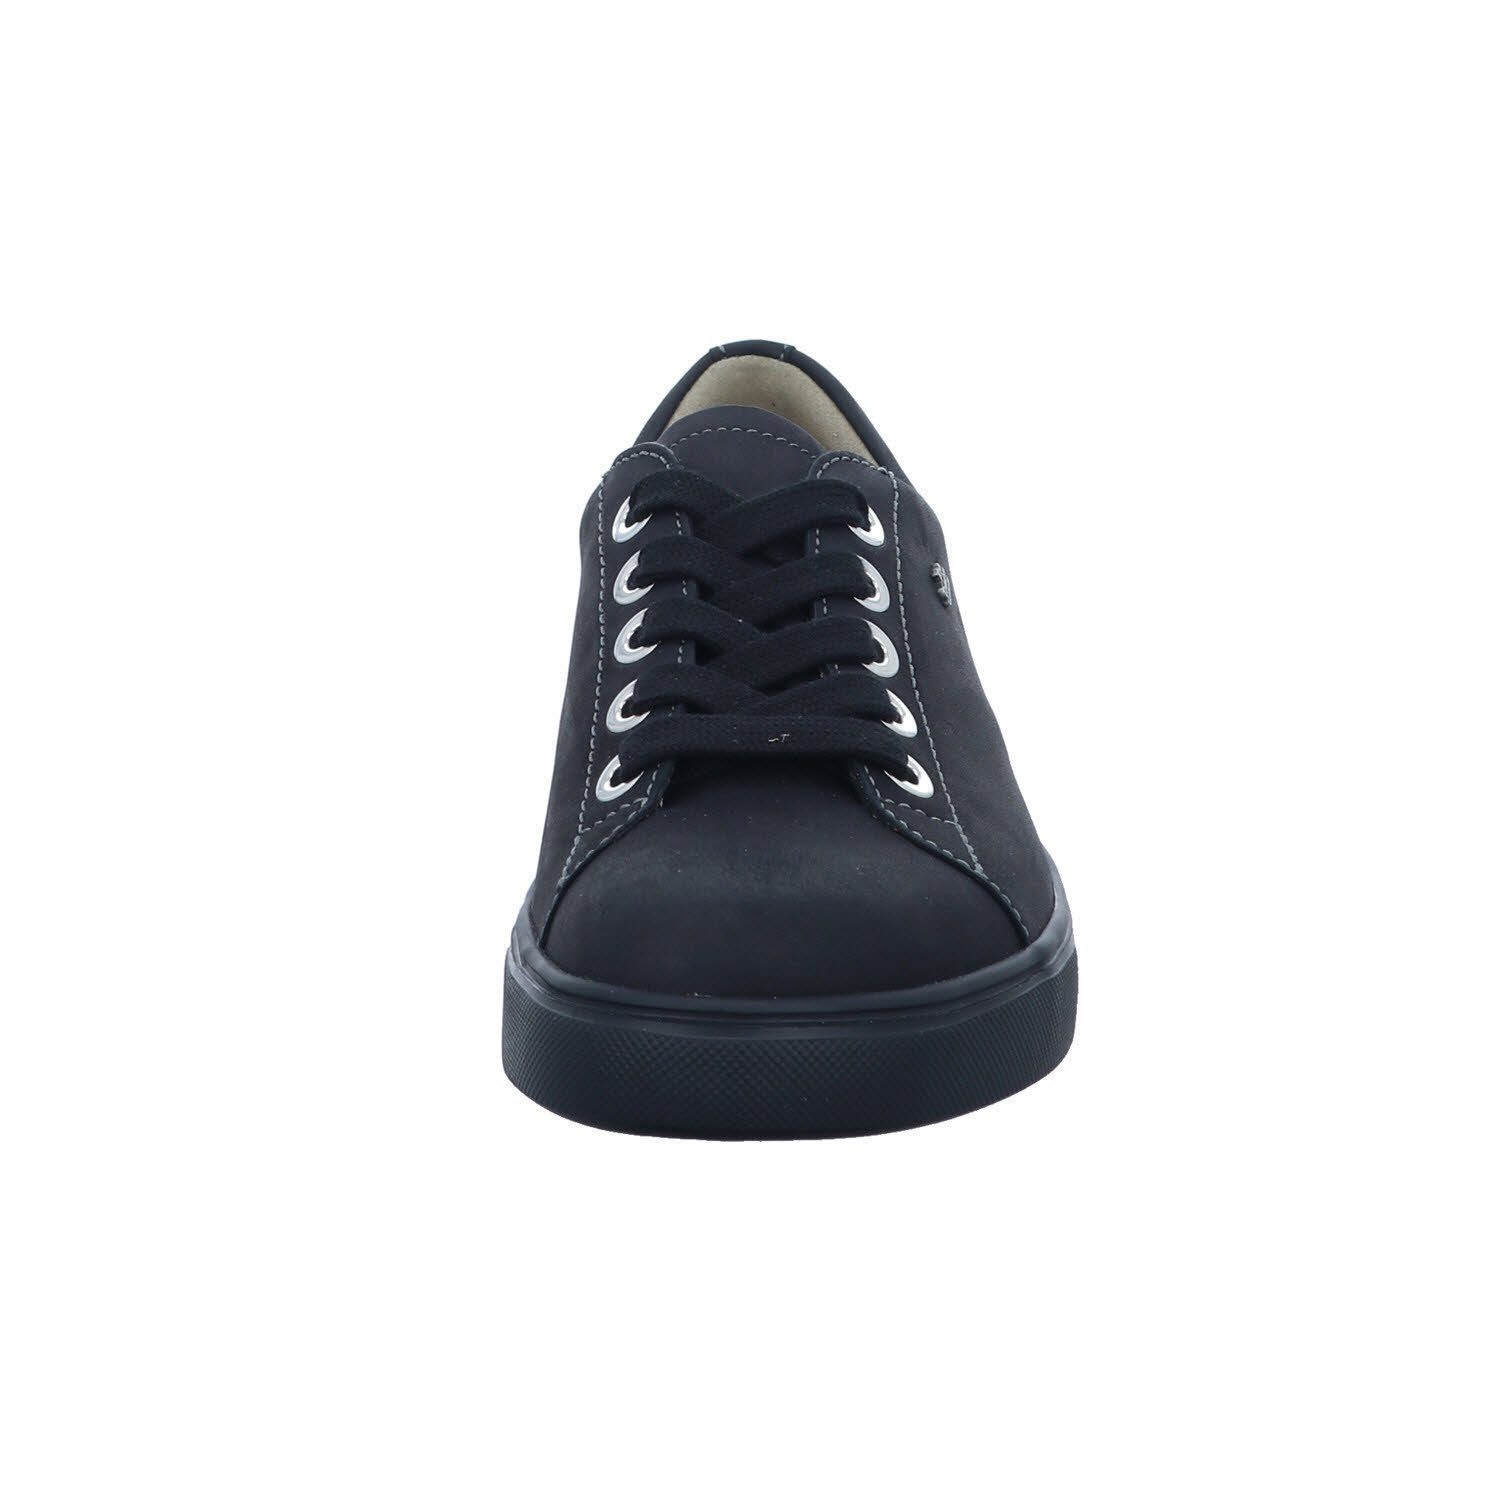 Finn Sneaker black Comfort